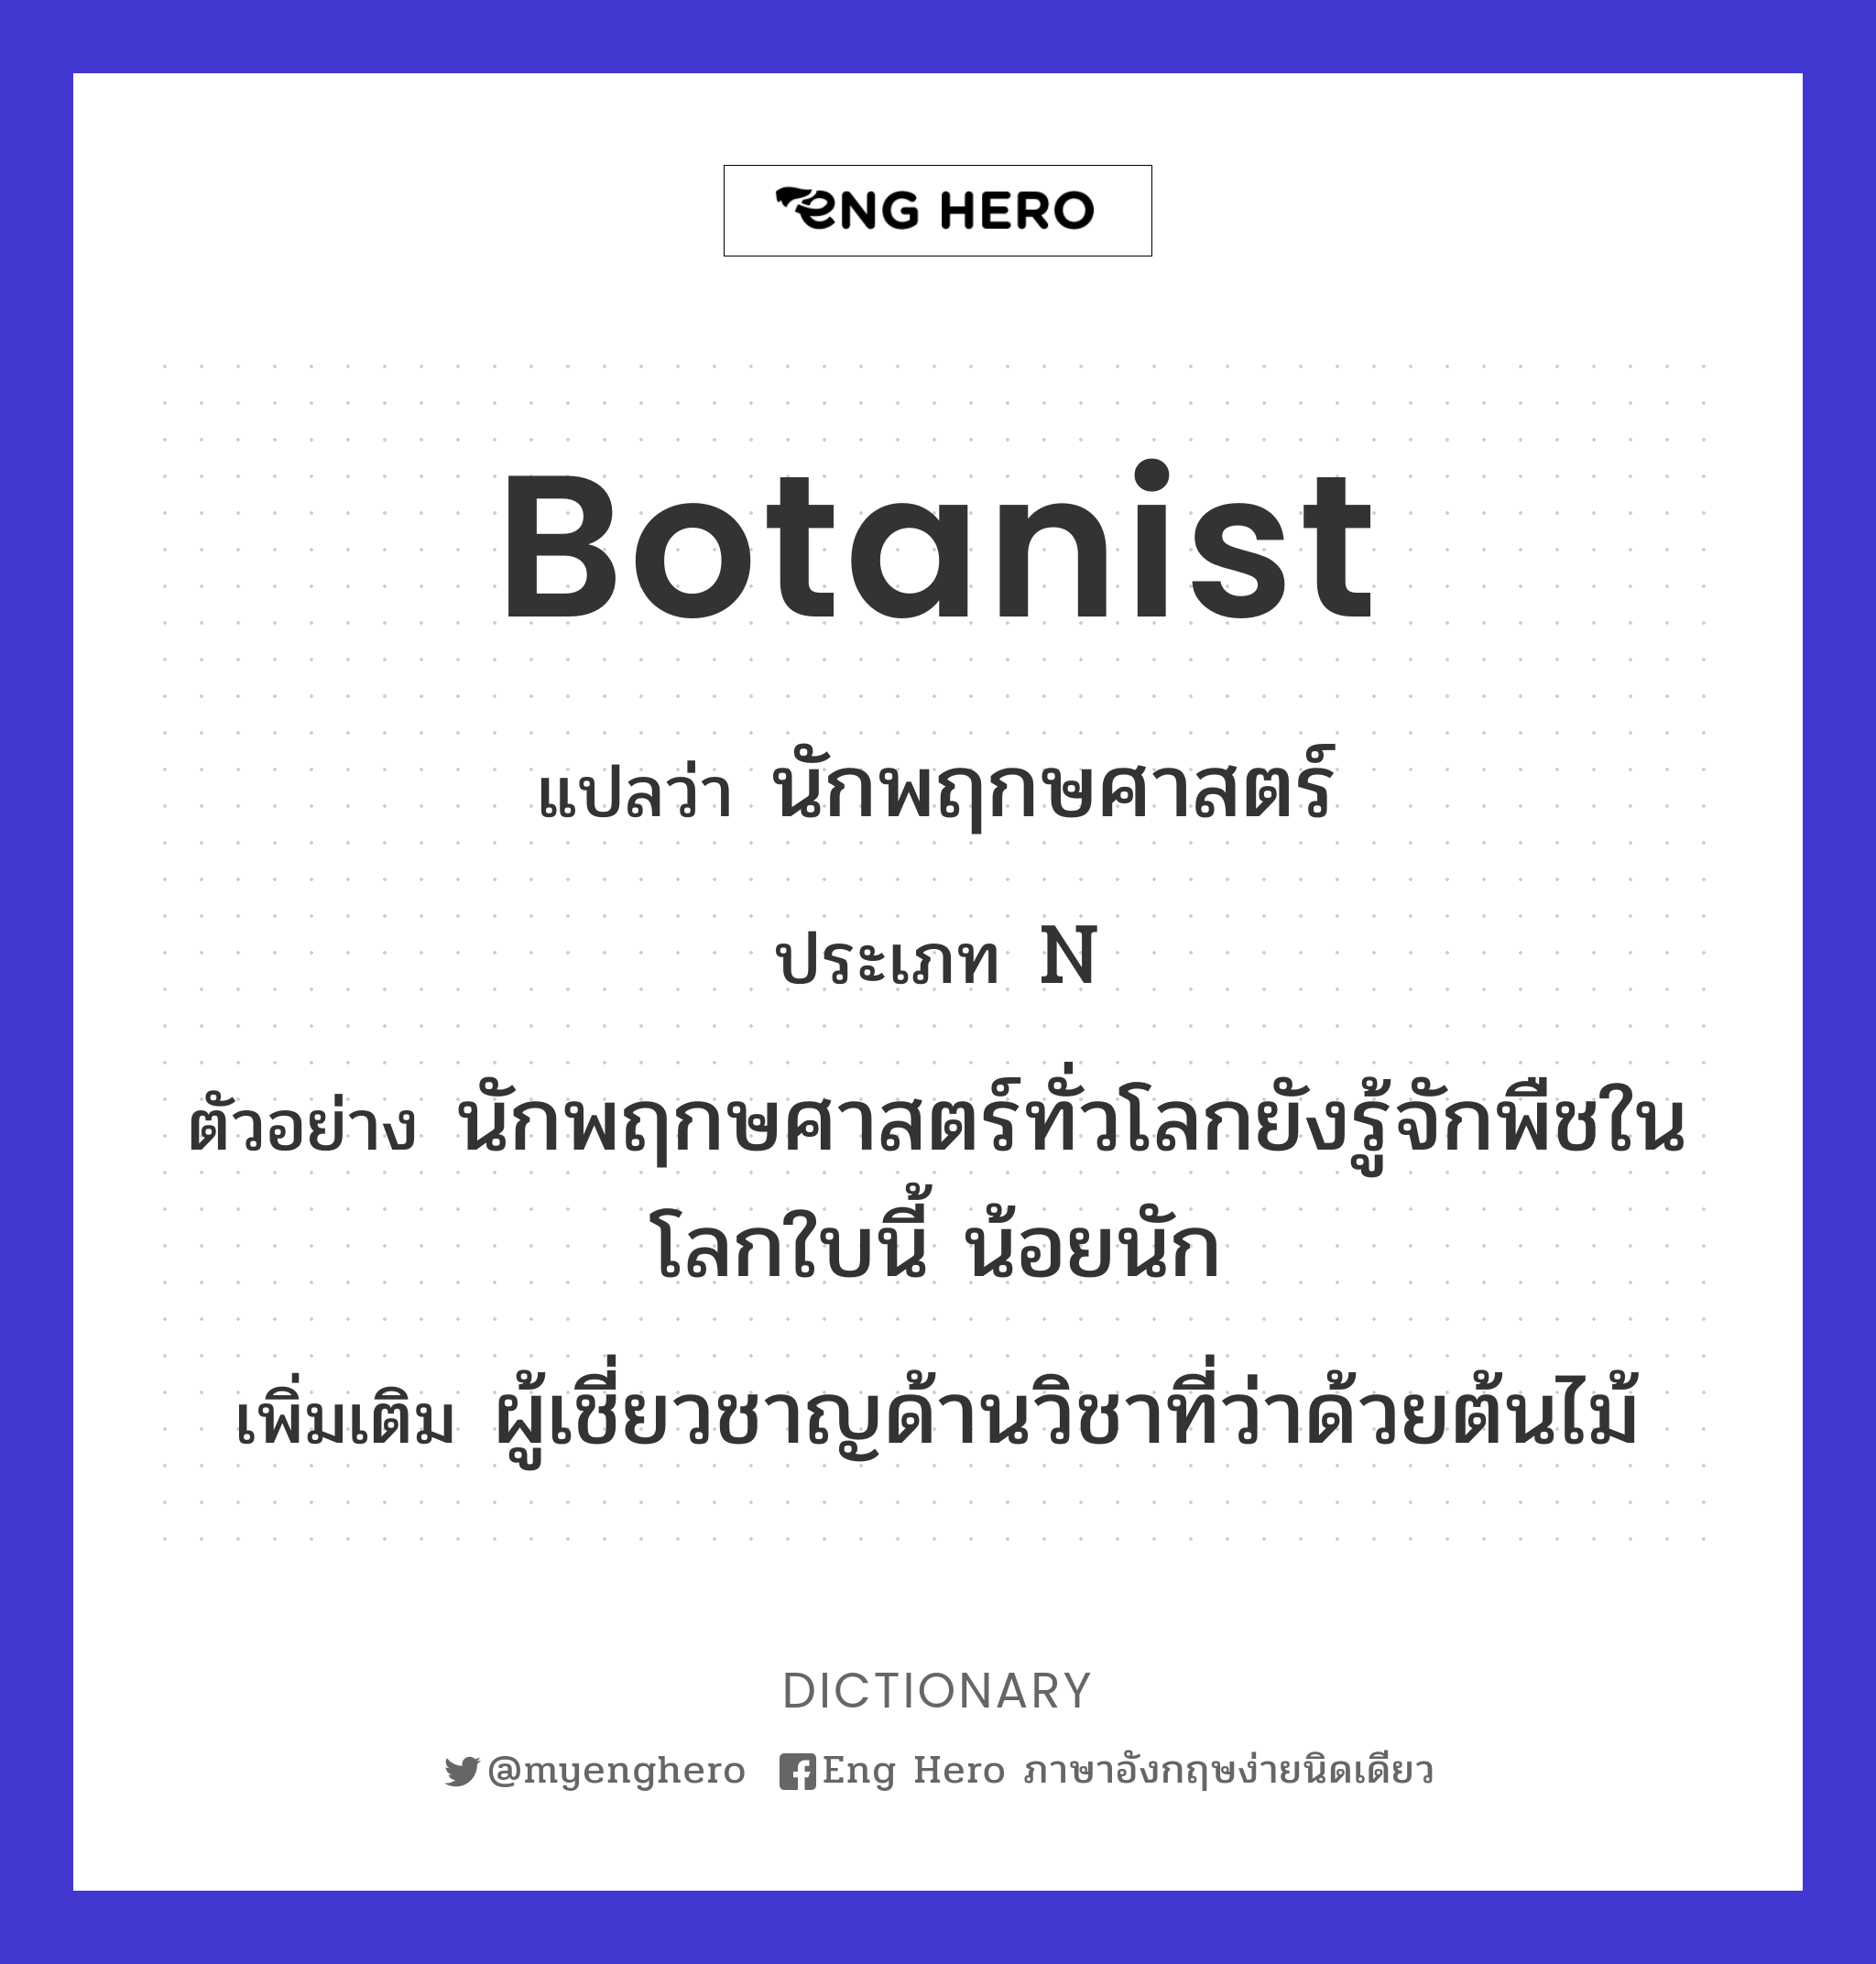 botanist